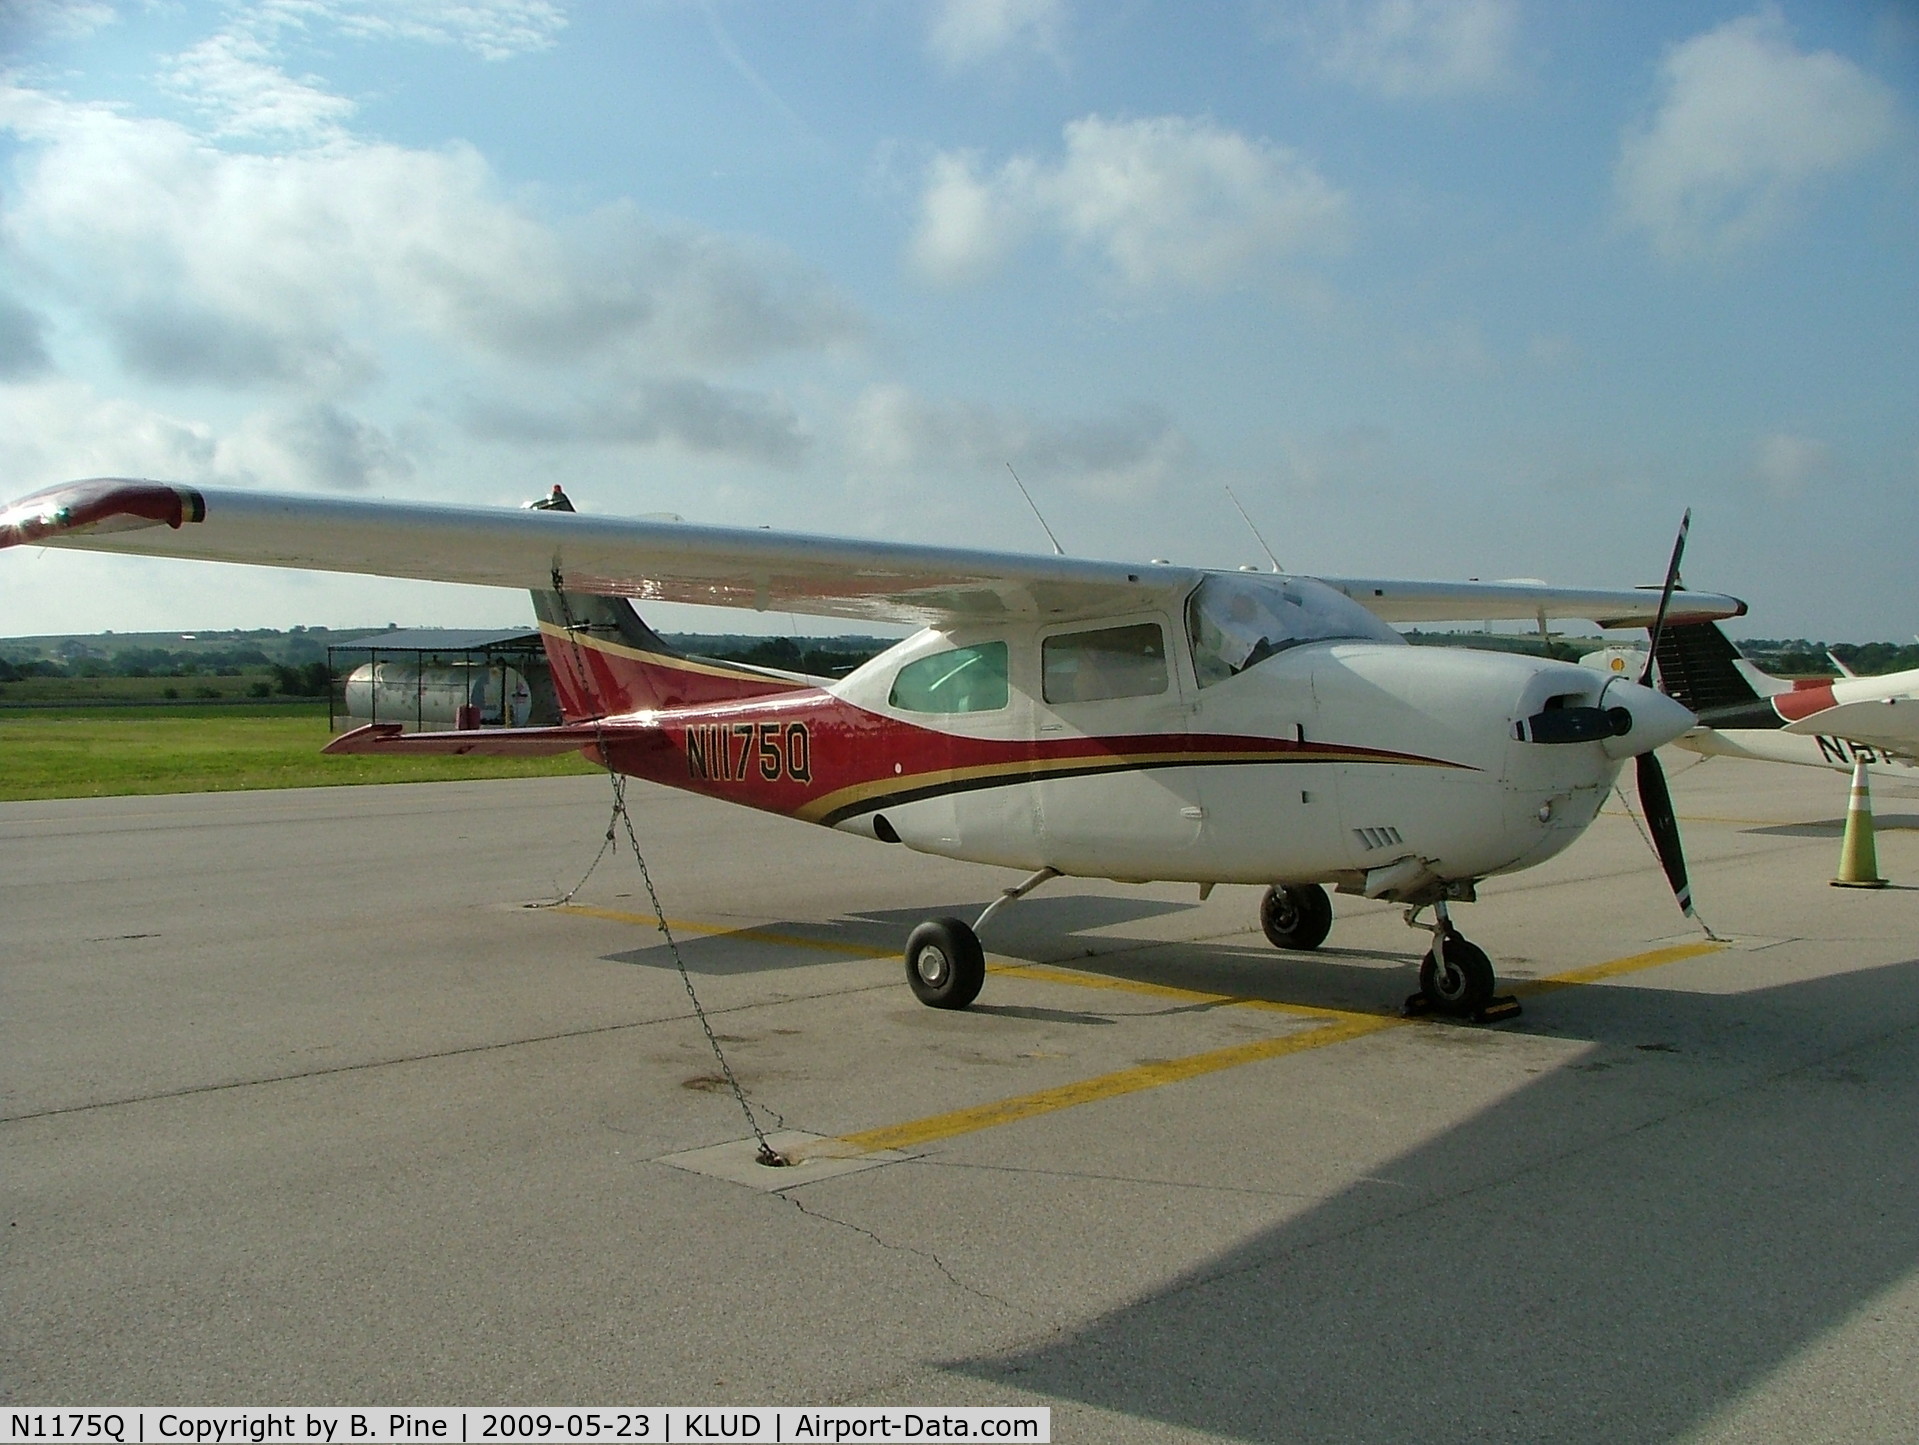 N1175Q, 1972 Cessna 210L Centurion C/N 21059675, Cessna 210 parked at Decatur Airport